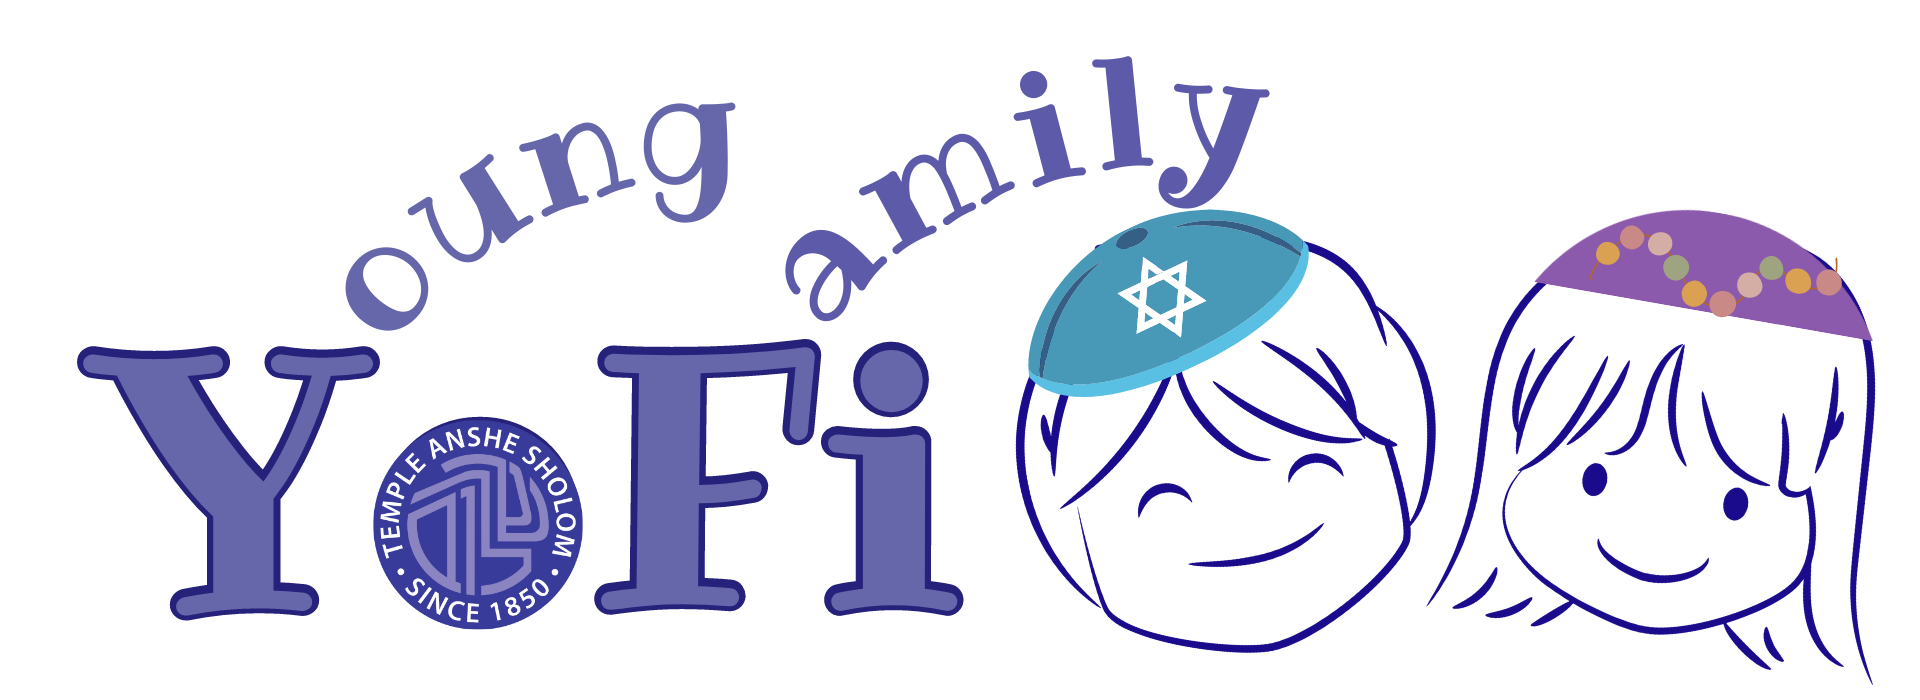 Yofi Family with TAS logo